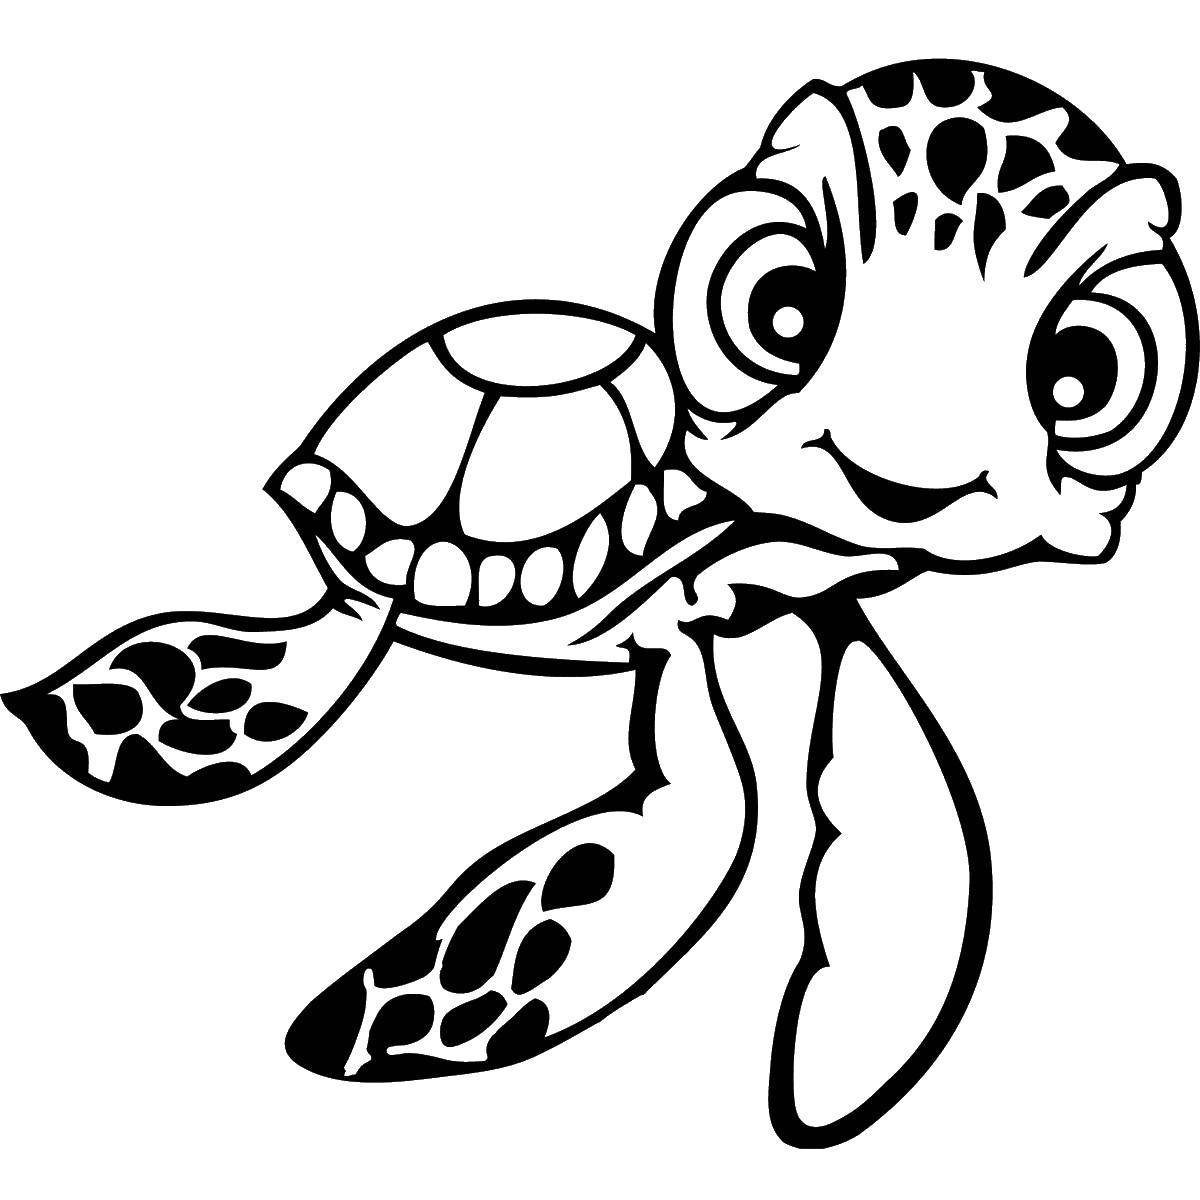 Coloring Милая черепашка. Category Животные. Tags:  животные, черепахи, морские черепахи.